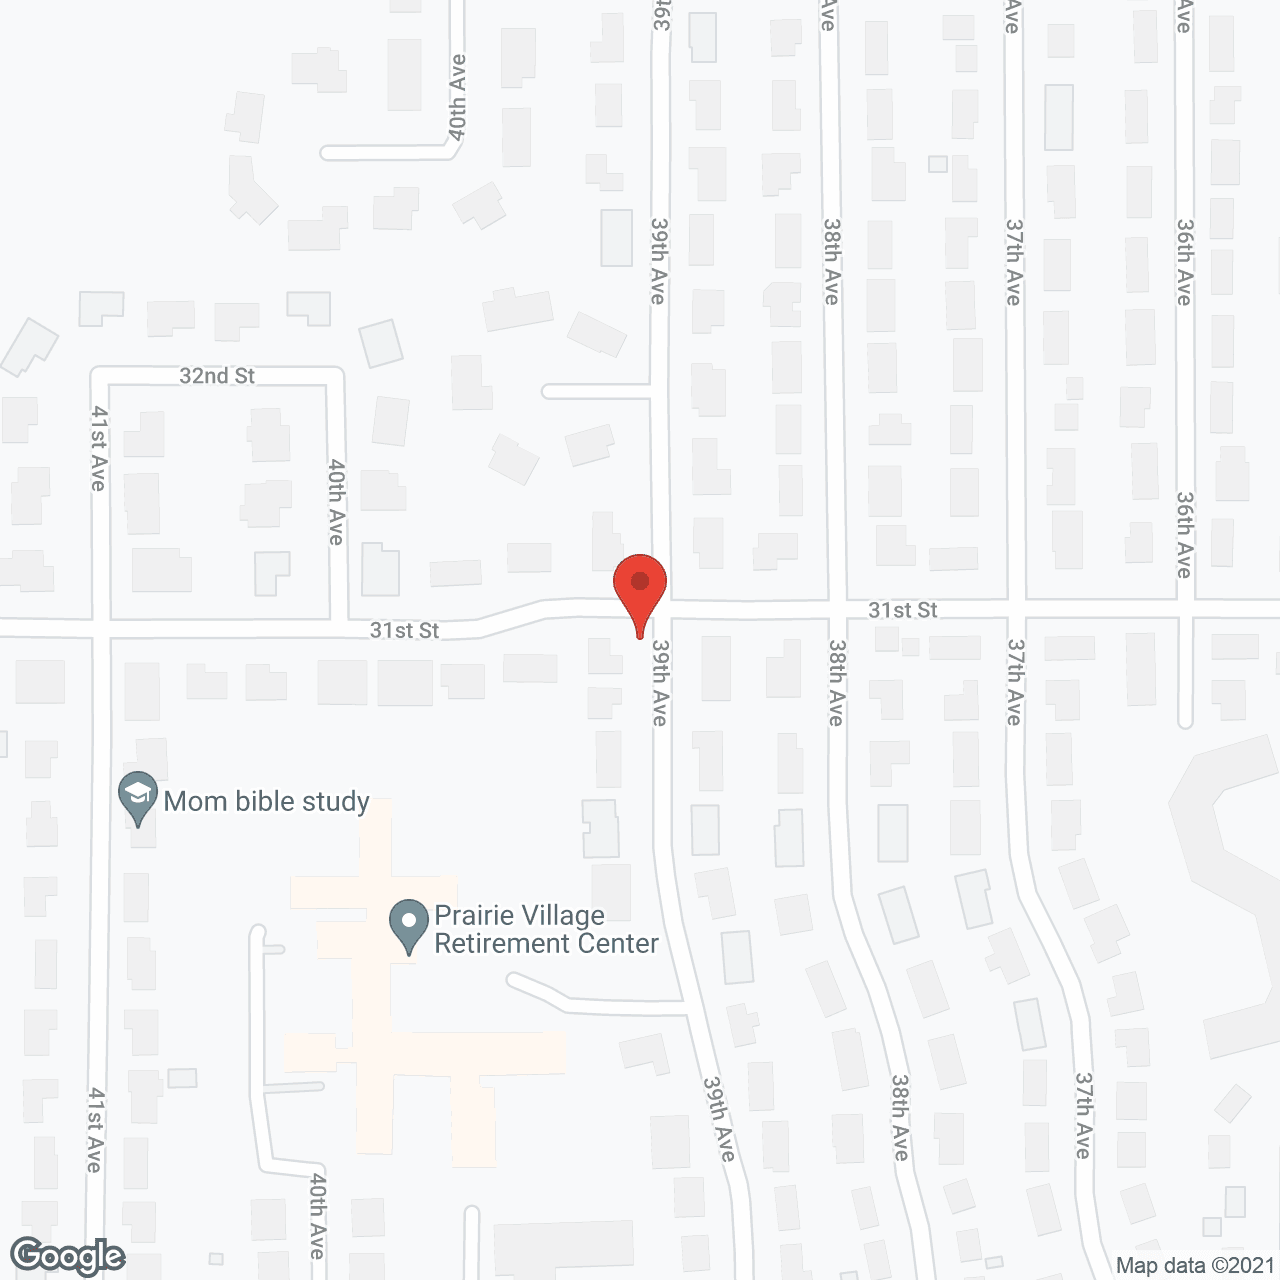 Prairie Village Retirement Center in google map